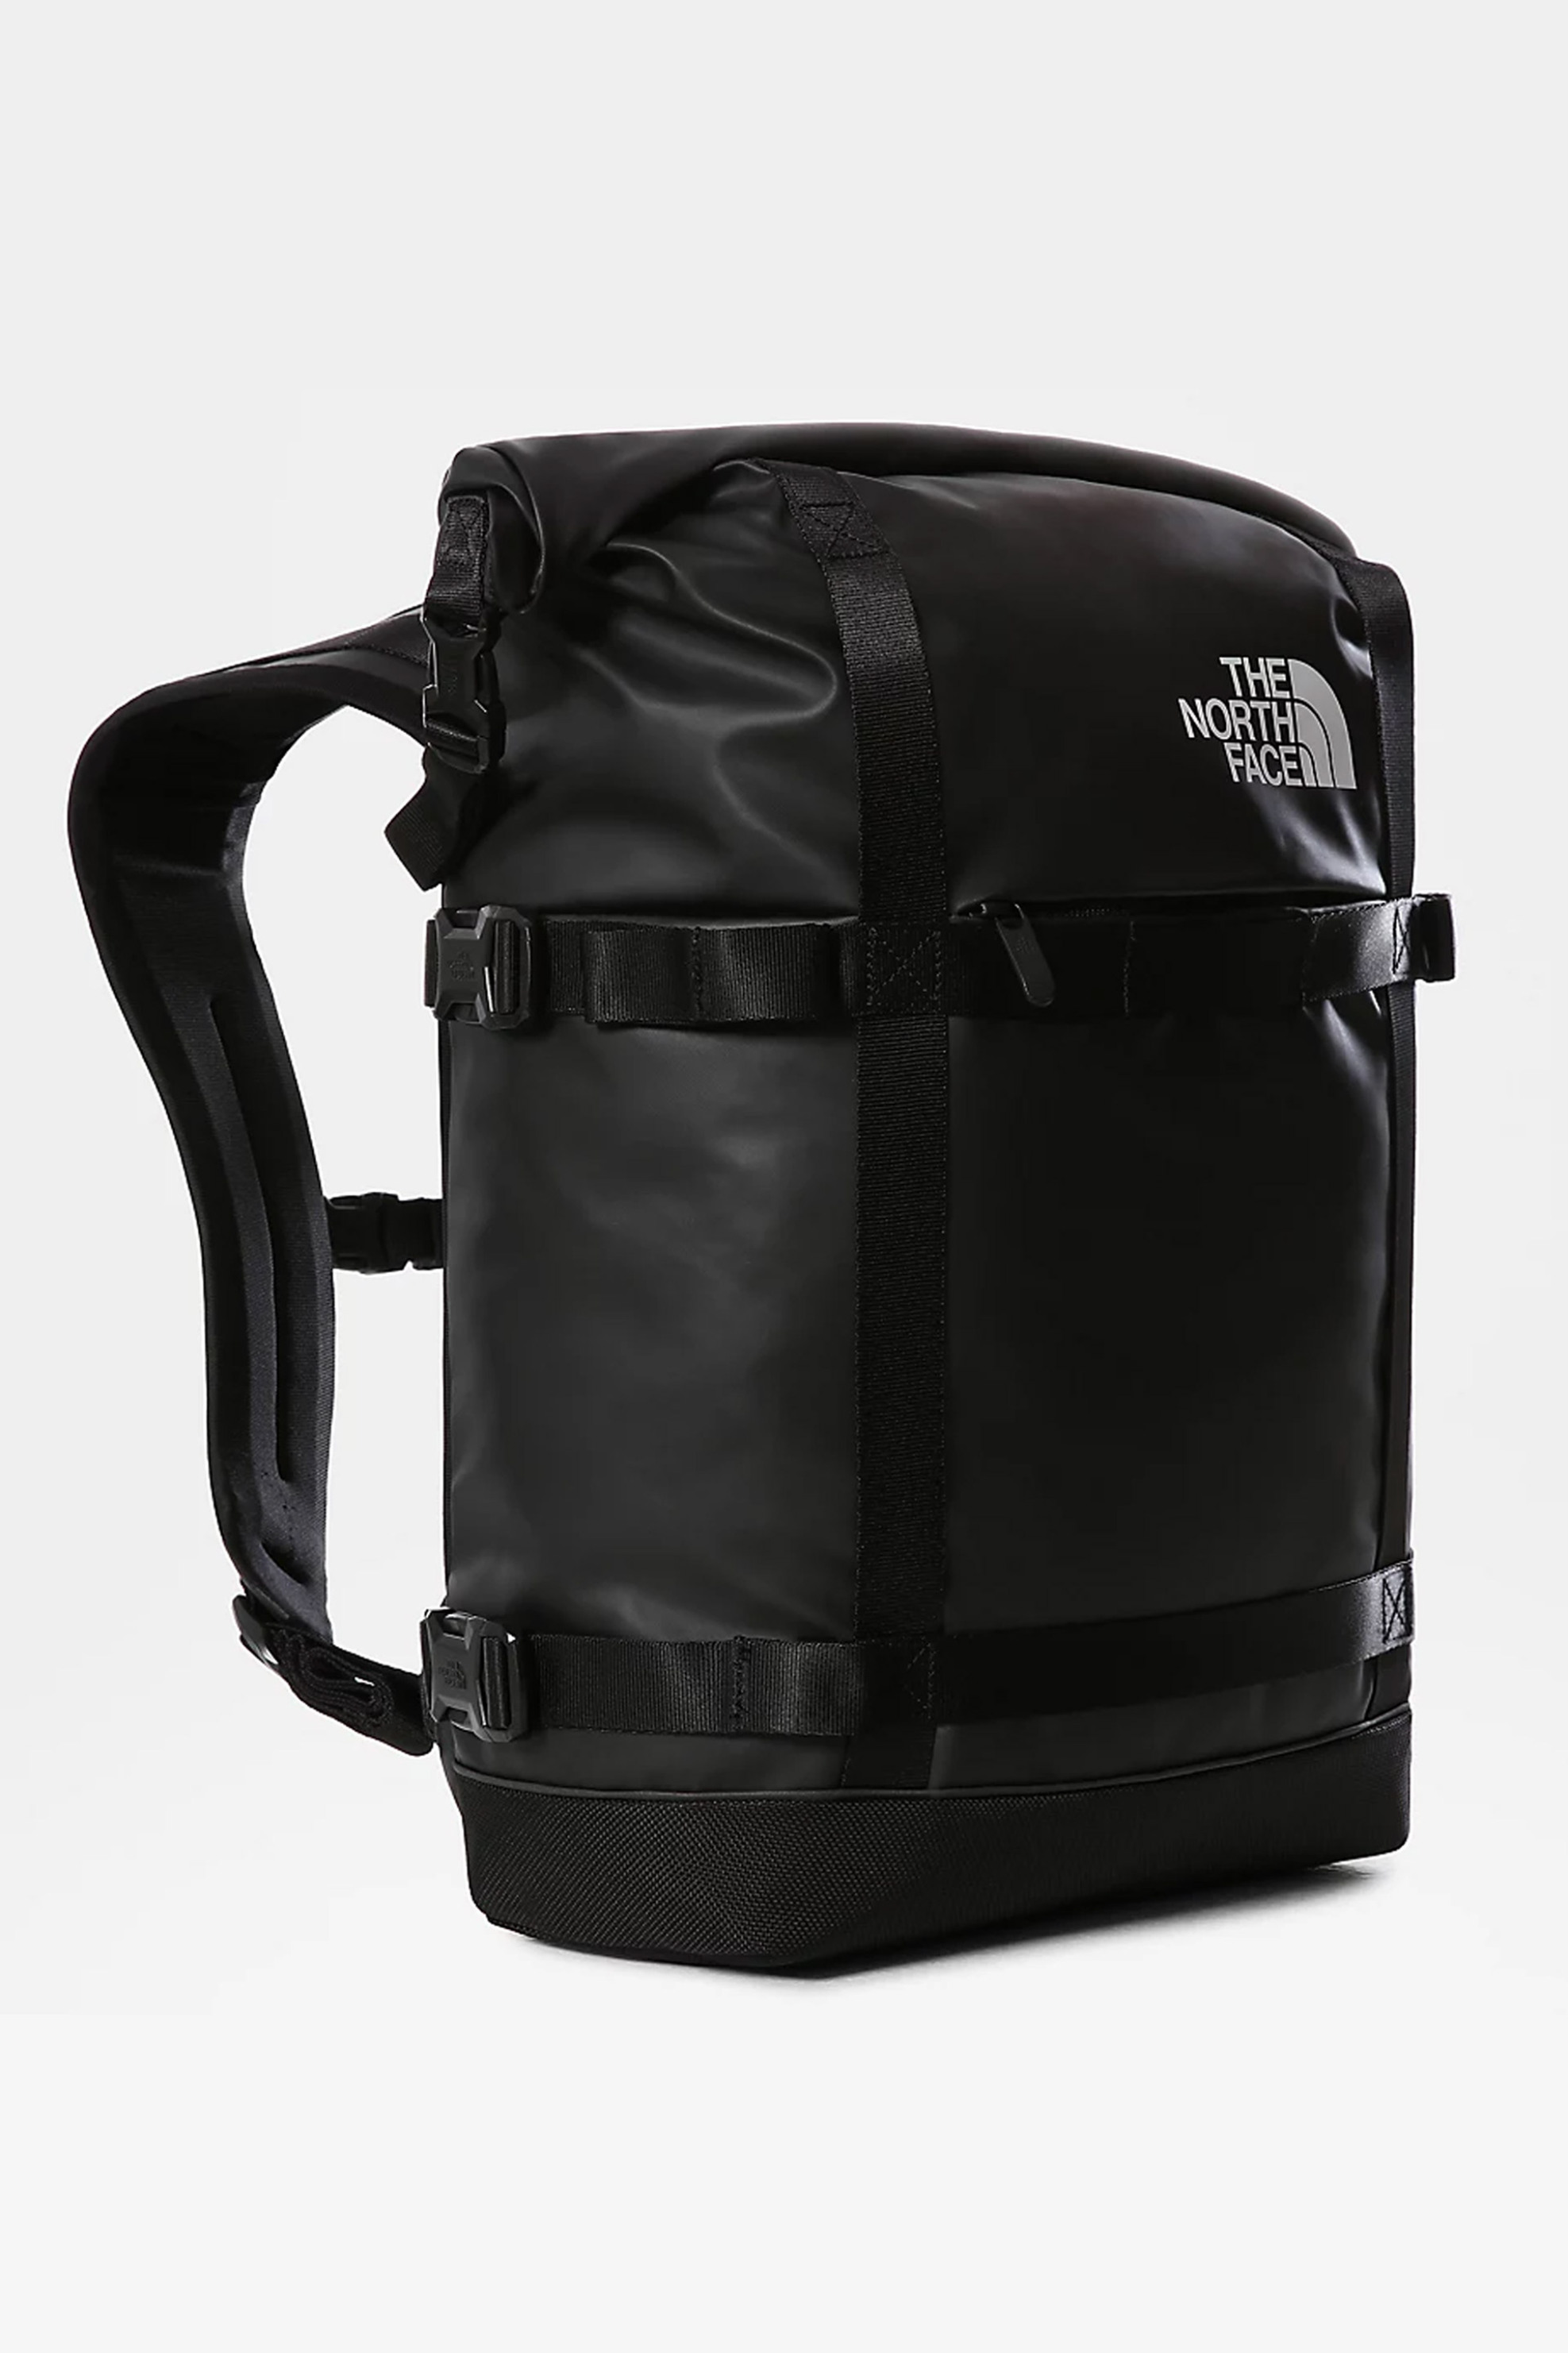 Ανδρική Μόδα > Ανδρικές Τσάντες > Ανδρικά Σακίδια & Backpacks The North Face unisex backpack μονόχρωμο με logo print και γυριστό πάνω μέρος "Commuter" - NF0A52TTKX71 Μαύρο